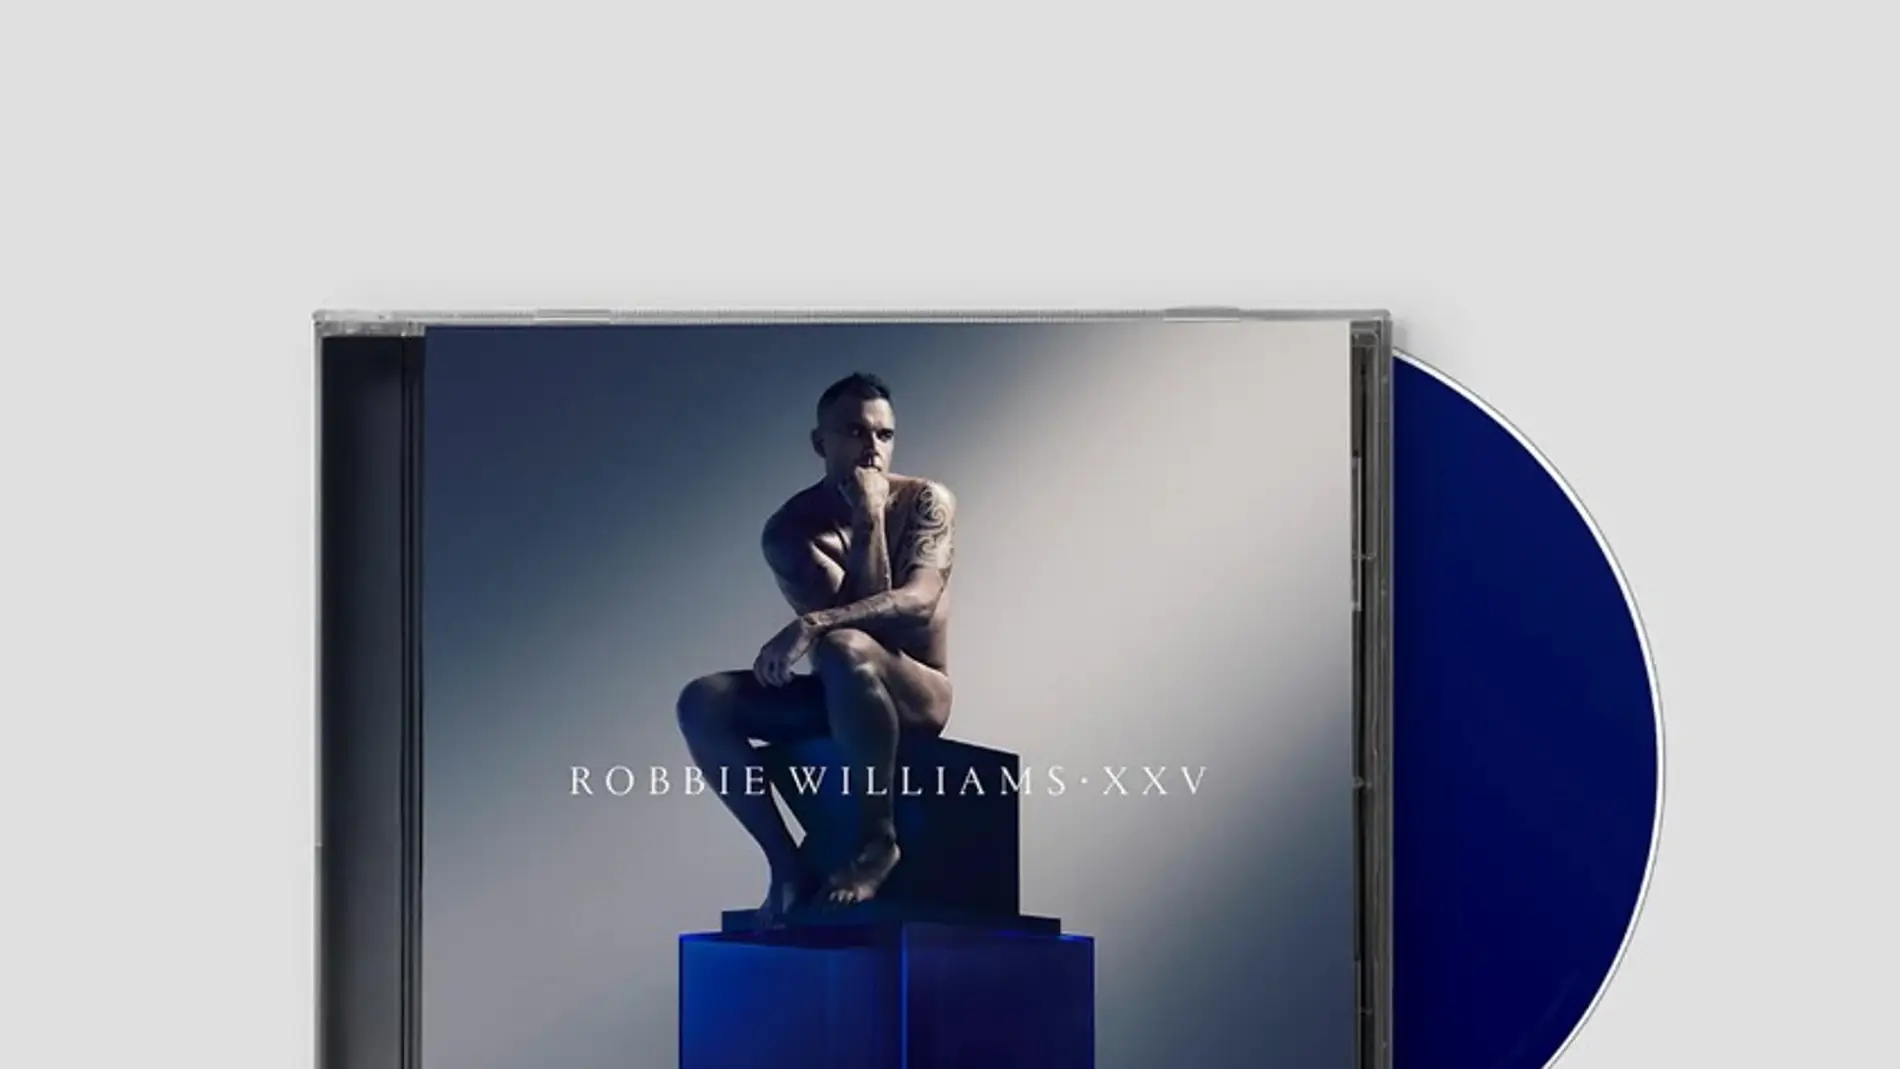 Robbie Williams celebra 25 años de carrera con un álbum de hits con orquesta sinfónica